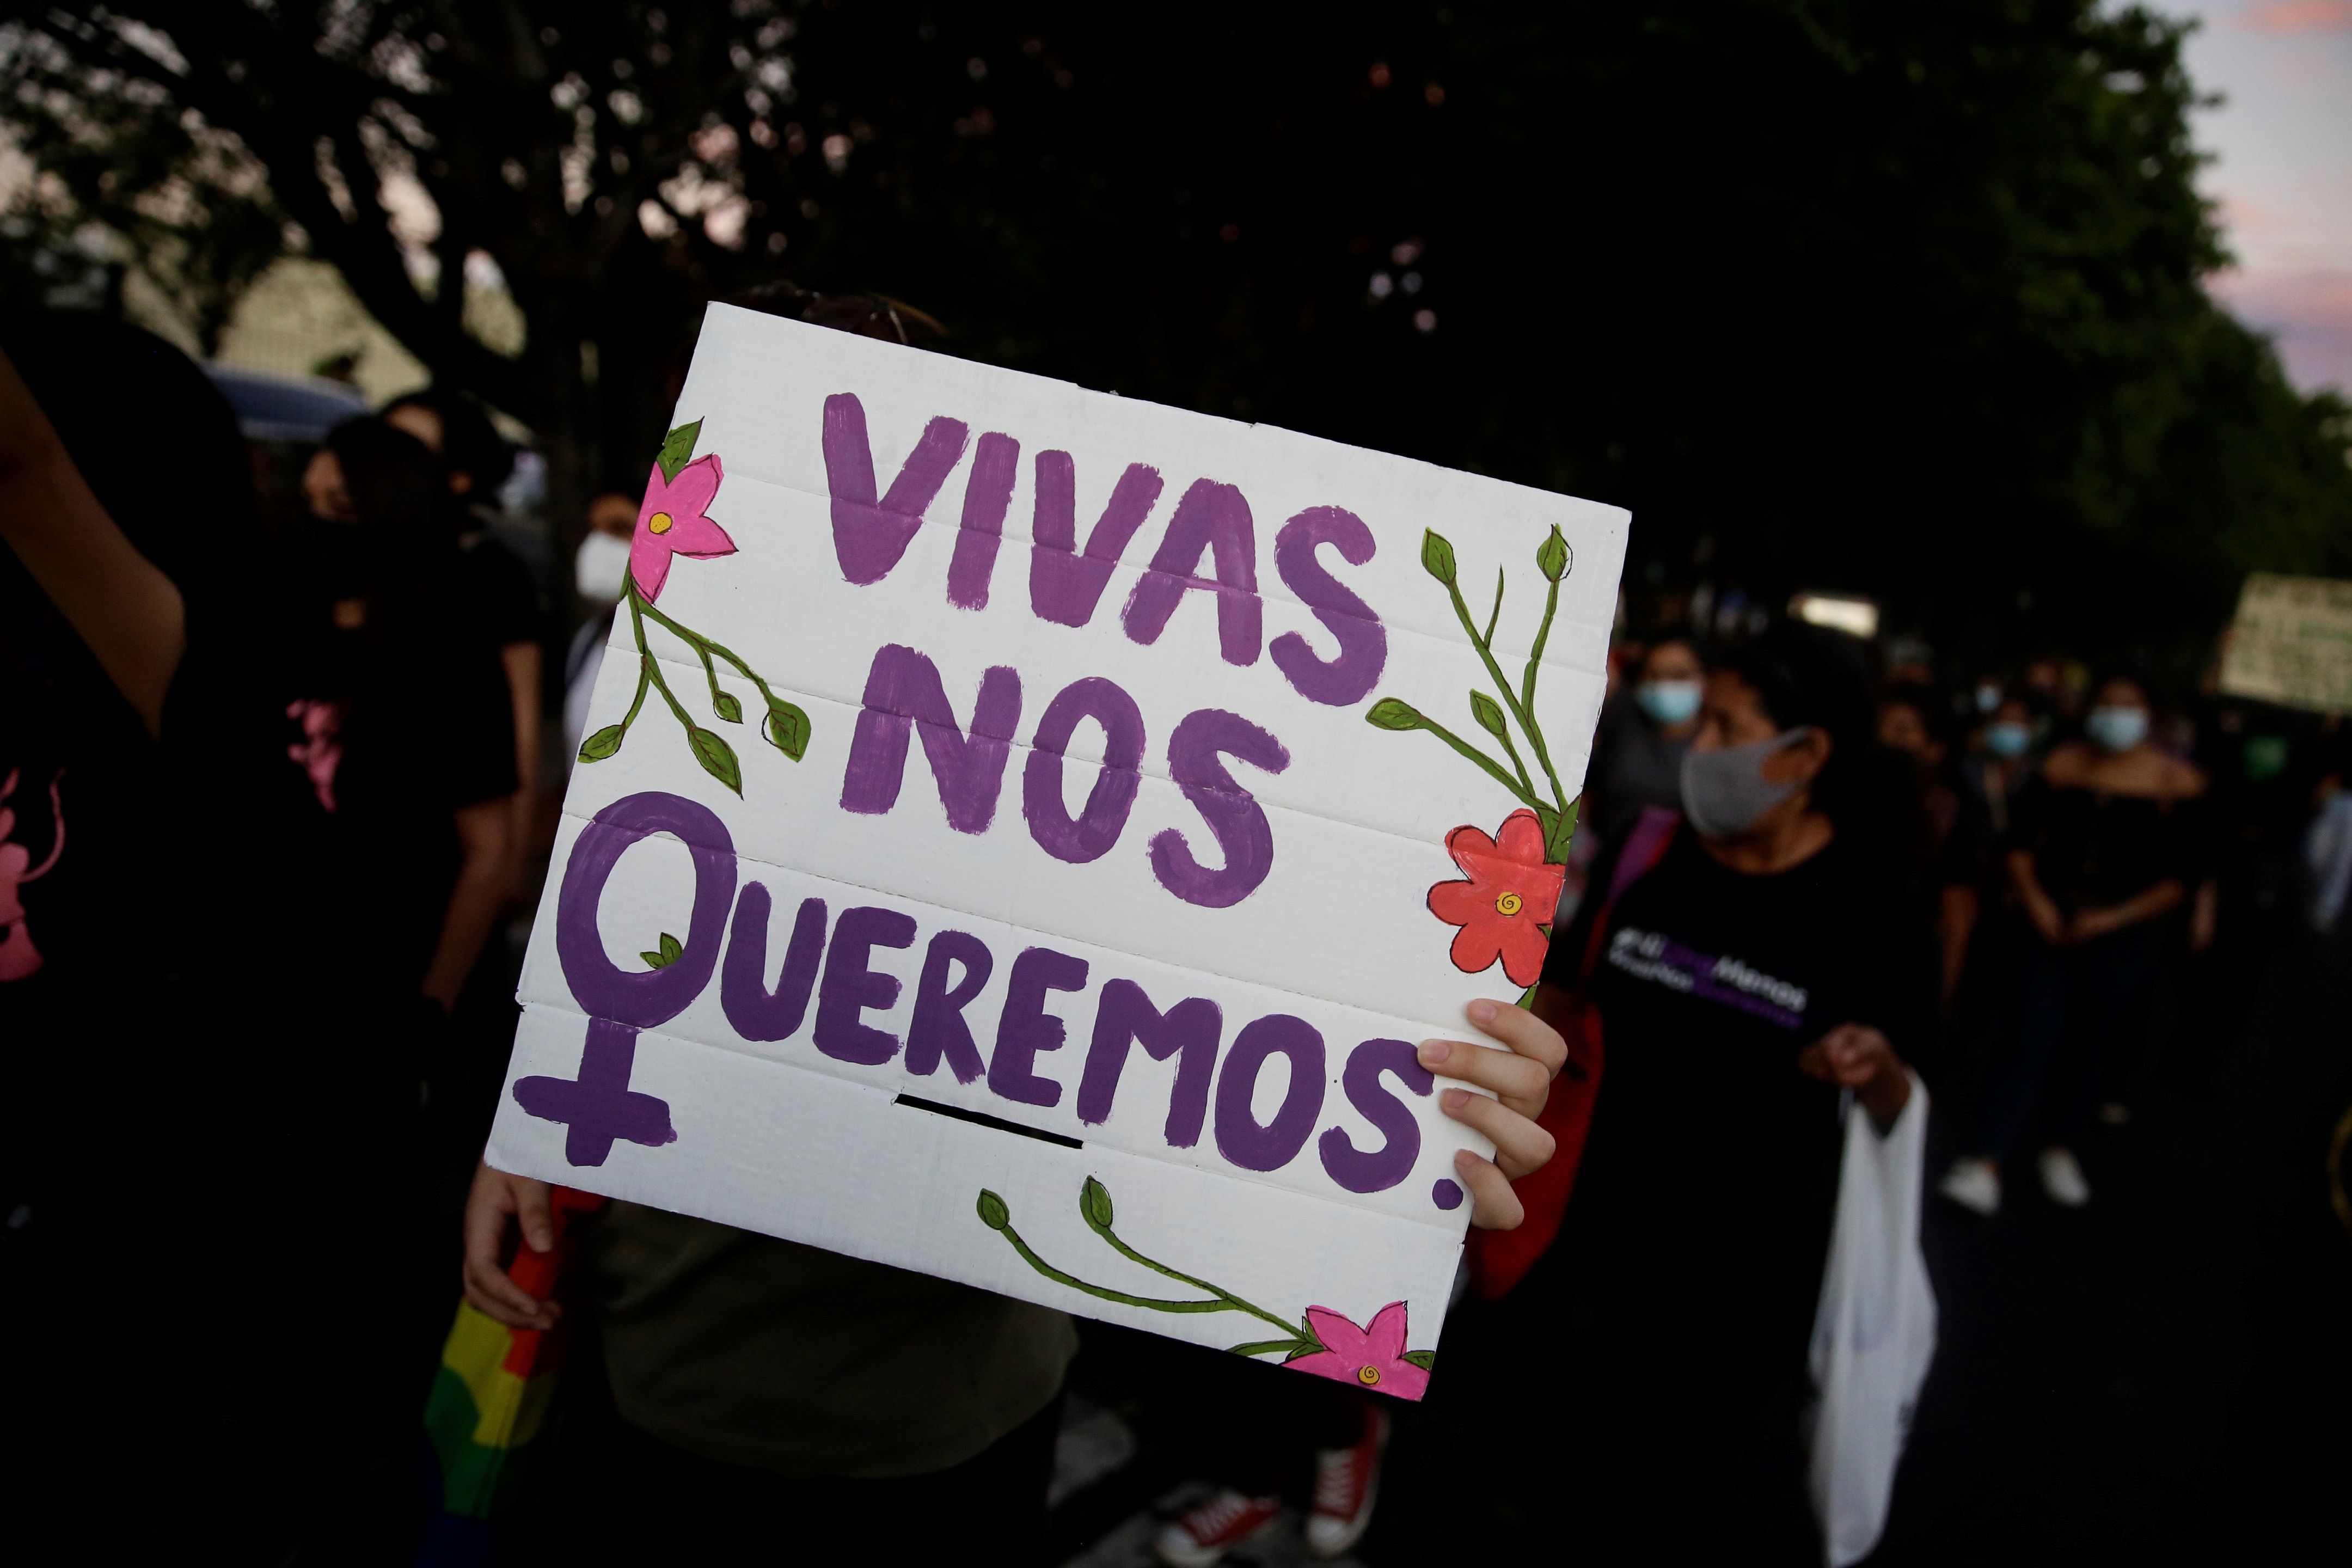 La violencia de género se ha agravado durante la pandemia, especialmente durante los confinamientos. (Foto Prensa Libre: EFE)